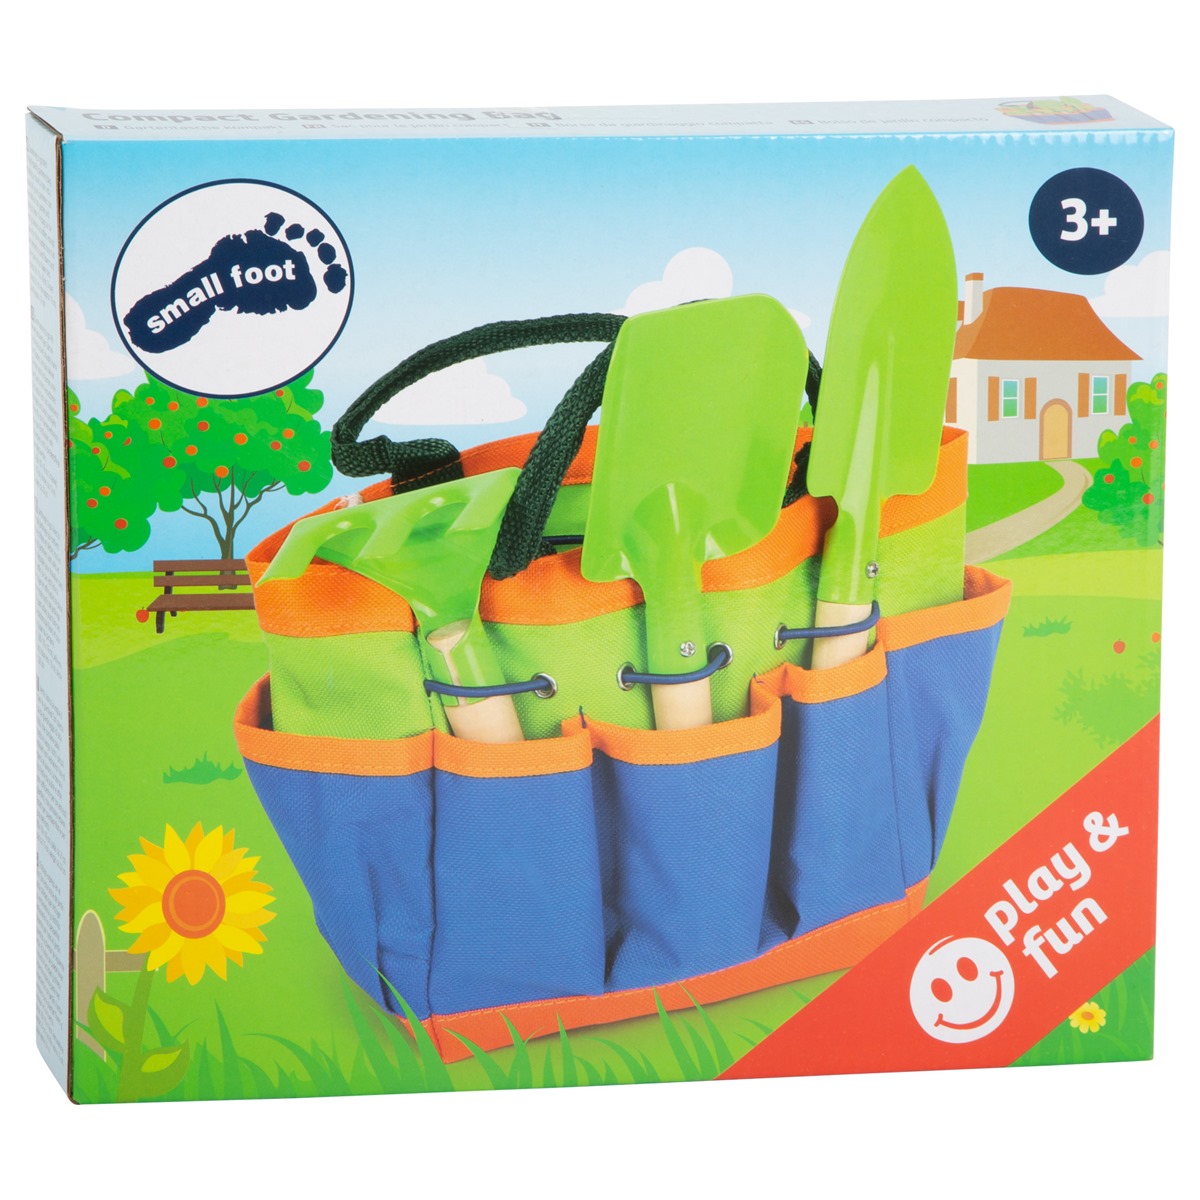 Kinder Gartengeräte Set BASIC mit Tasche - Kinder Gartentasche mit Zubehör: Rechen, Schaufel und Spaten